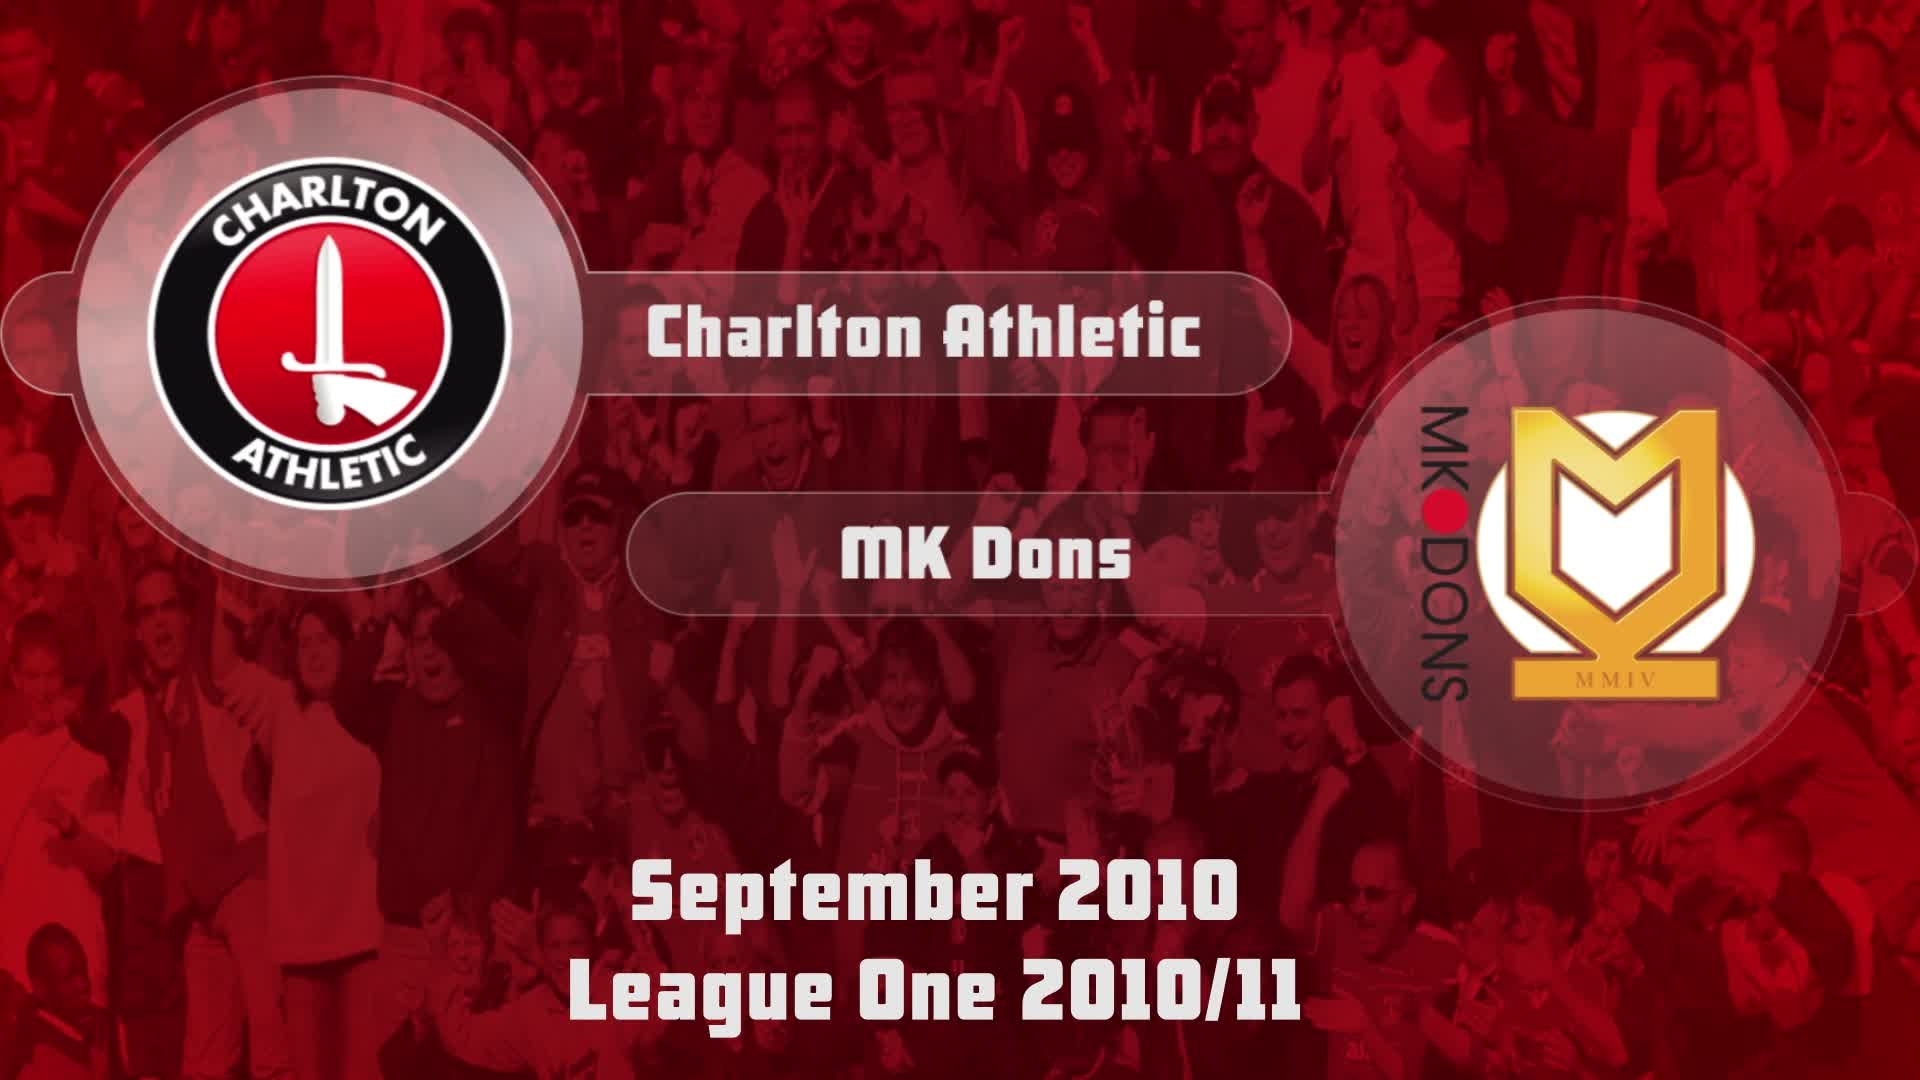 11 HIGHLIGHTS | Charlton 1 MK Dons 0 (Sept 2010)